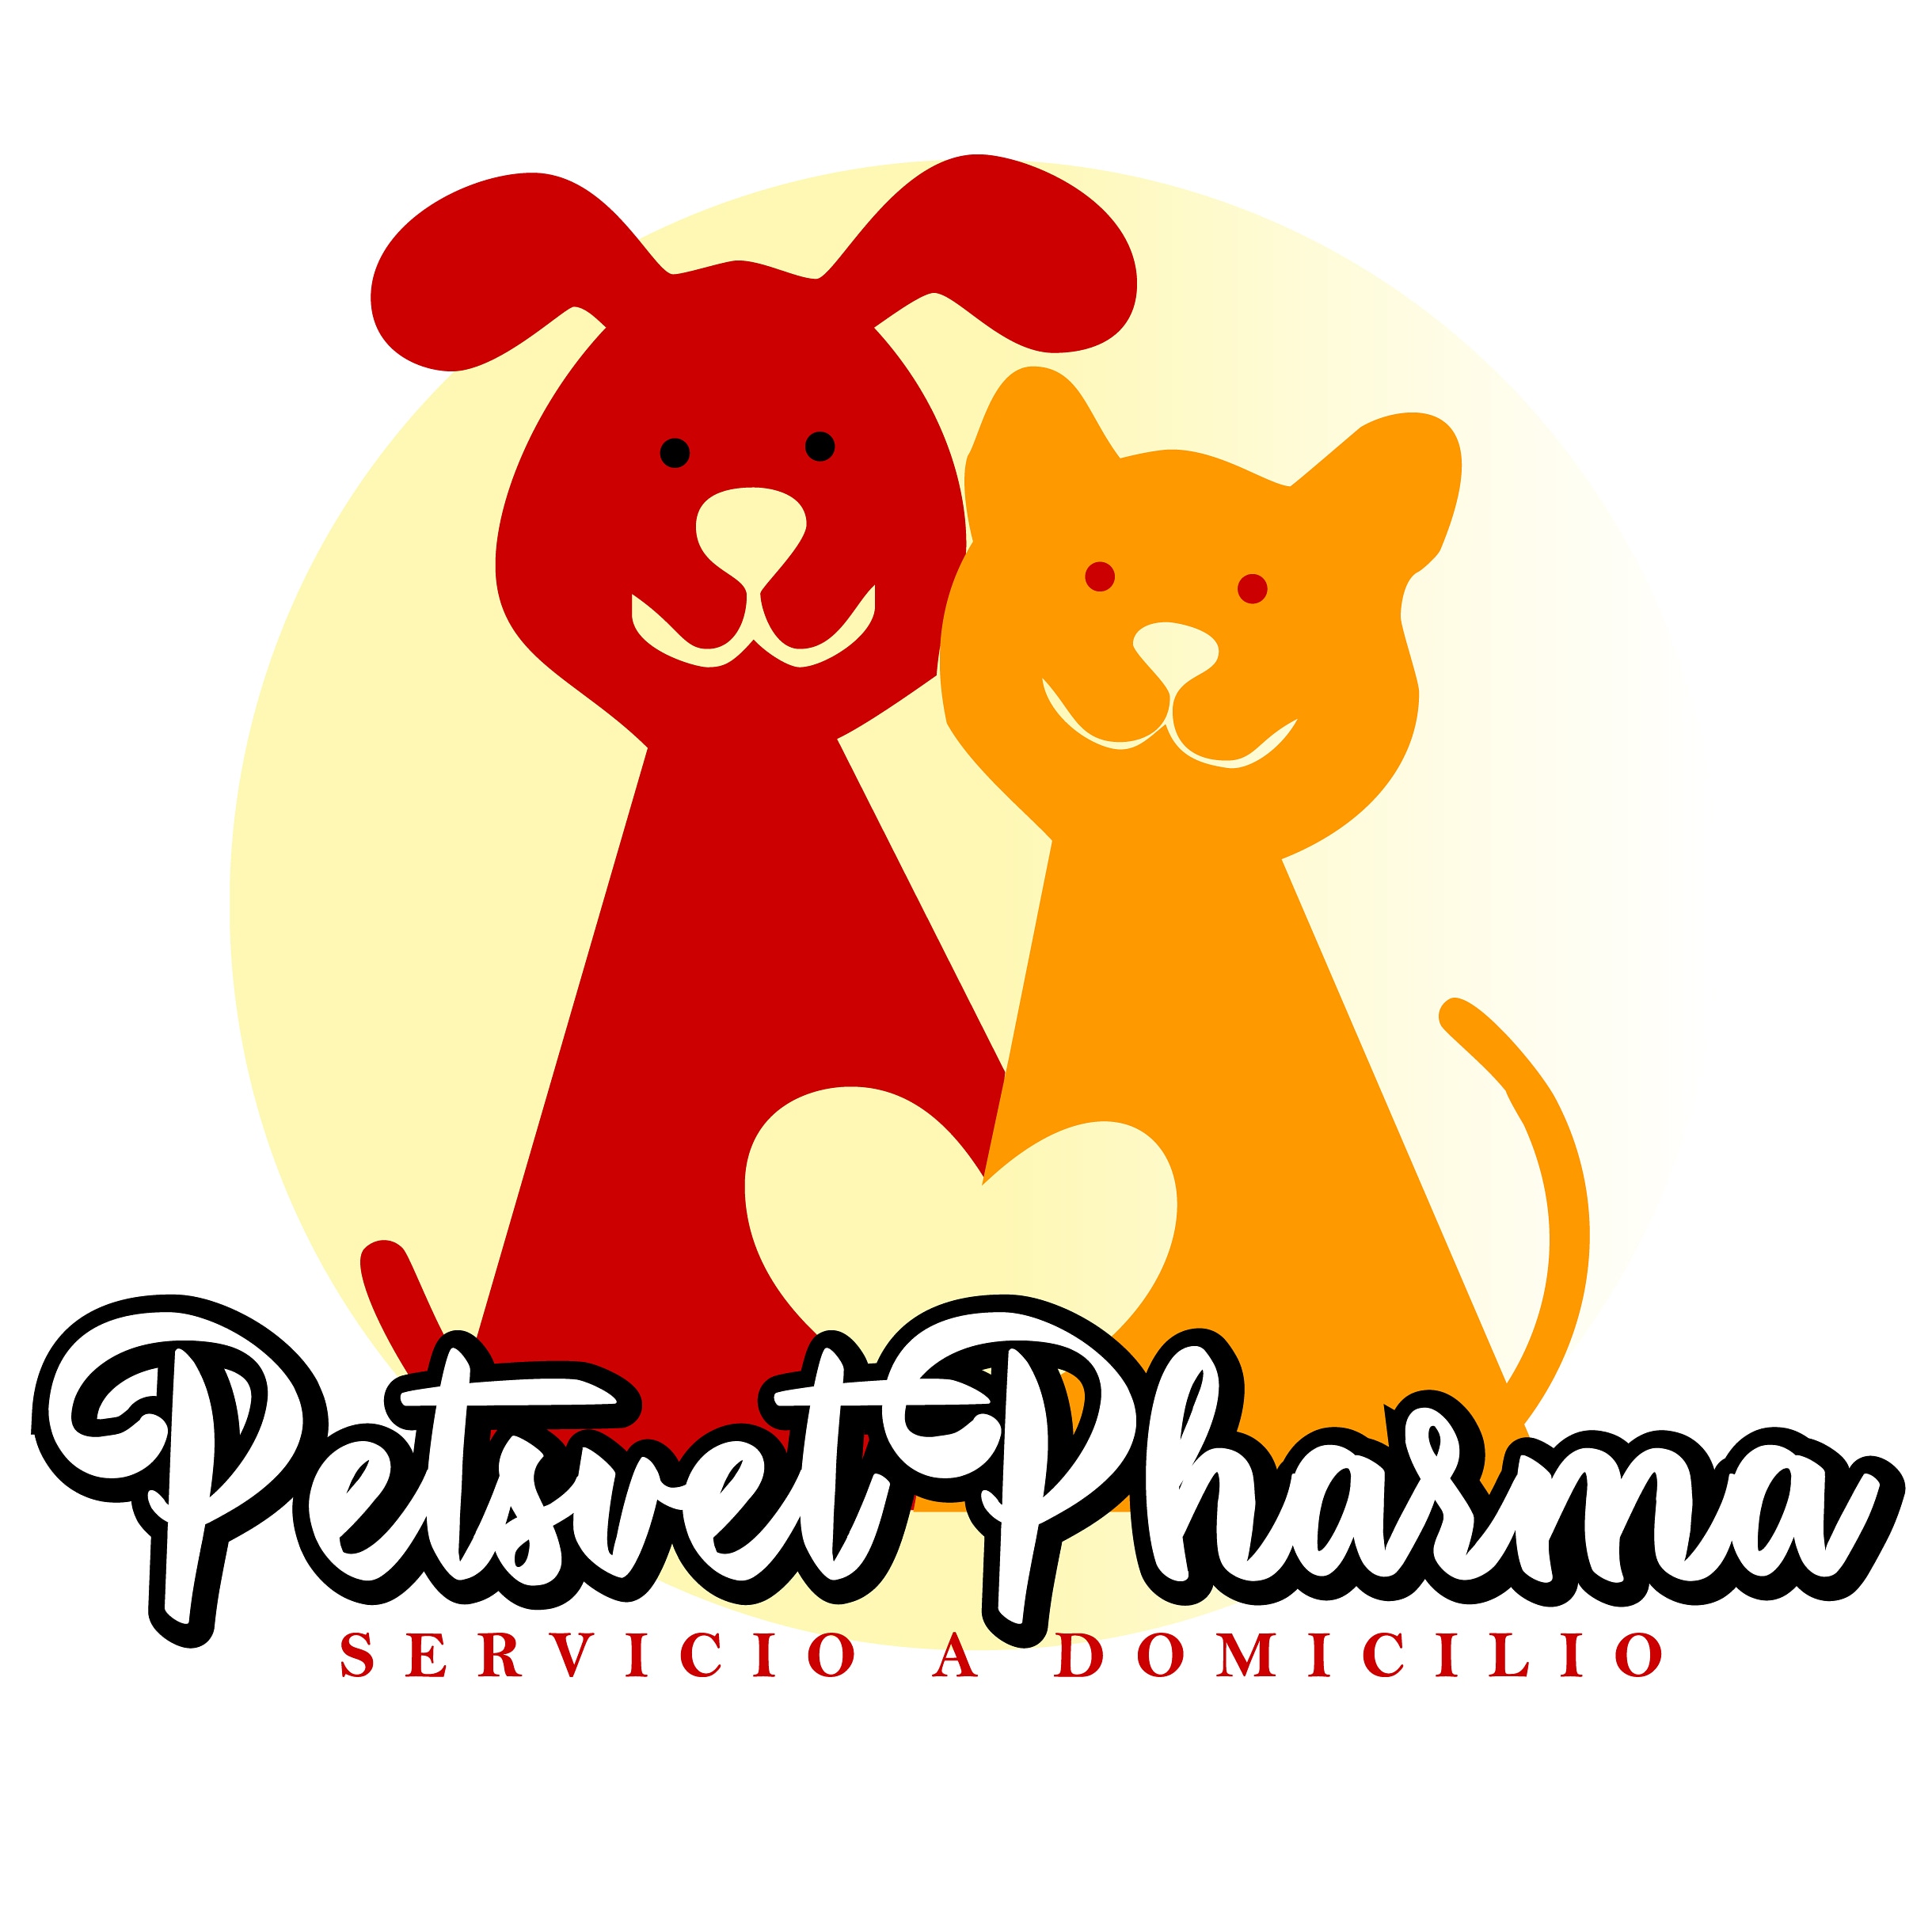 PetsveT Pharma La Serena - La Serena - La Serena - Coquimbo